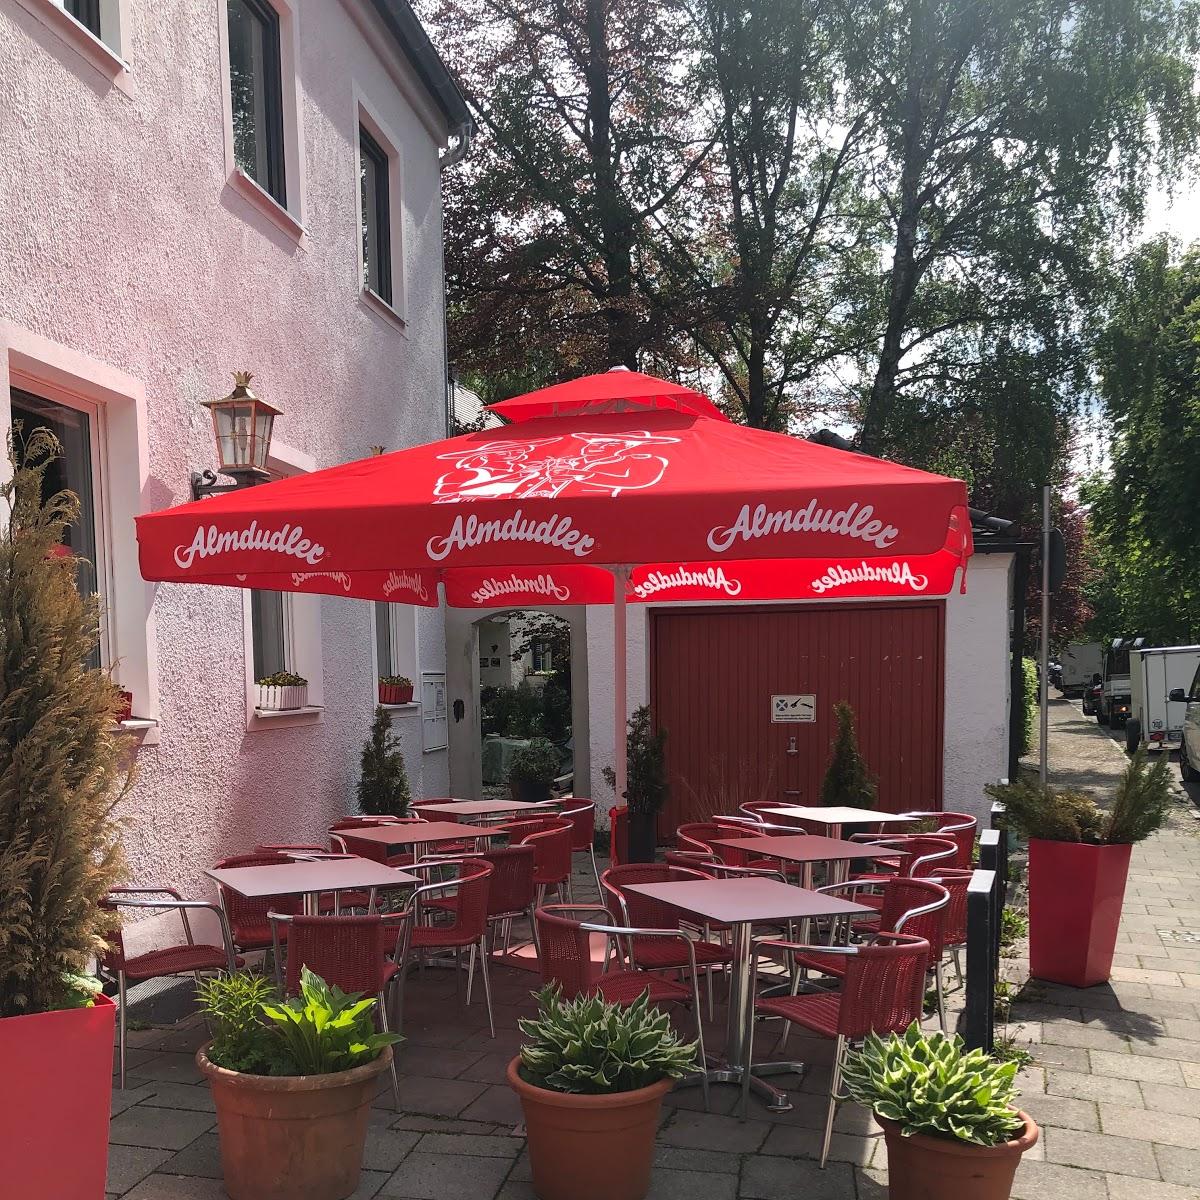 Restaurant "Cafe Tirolese" in Pullach im Isartal